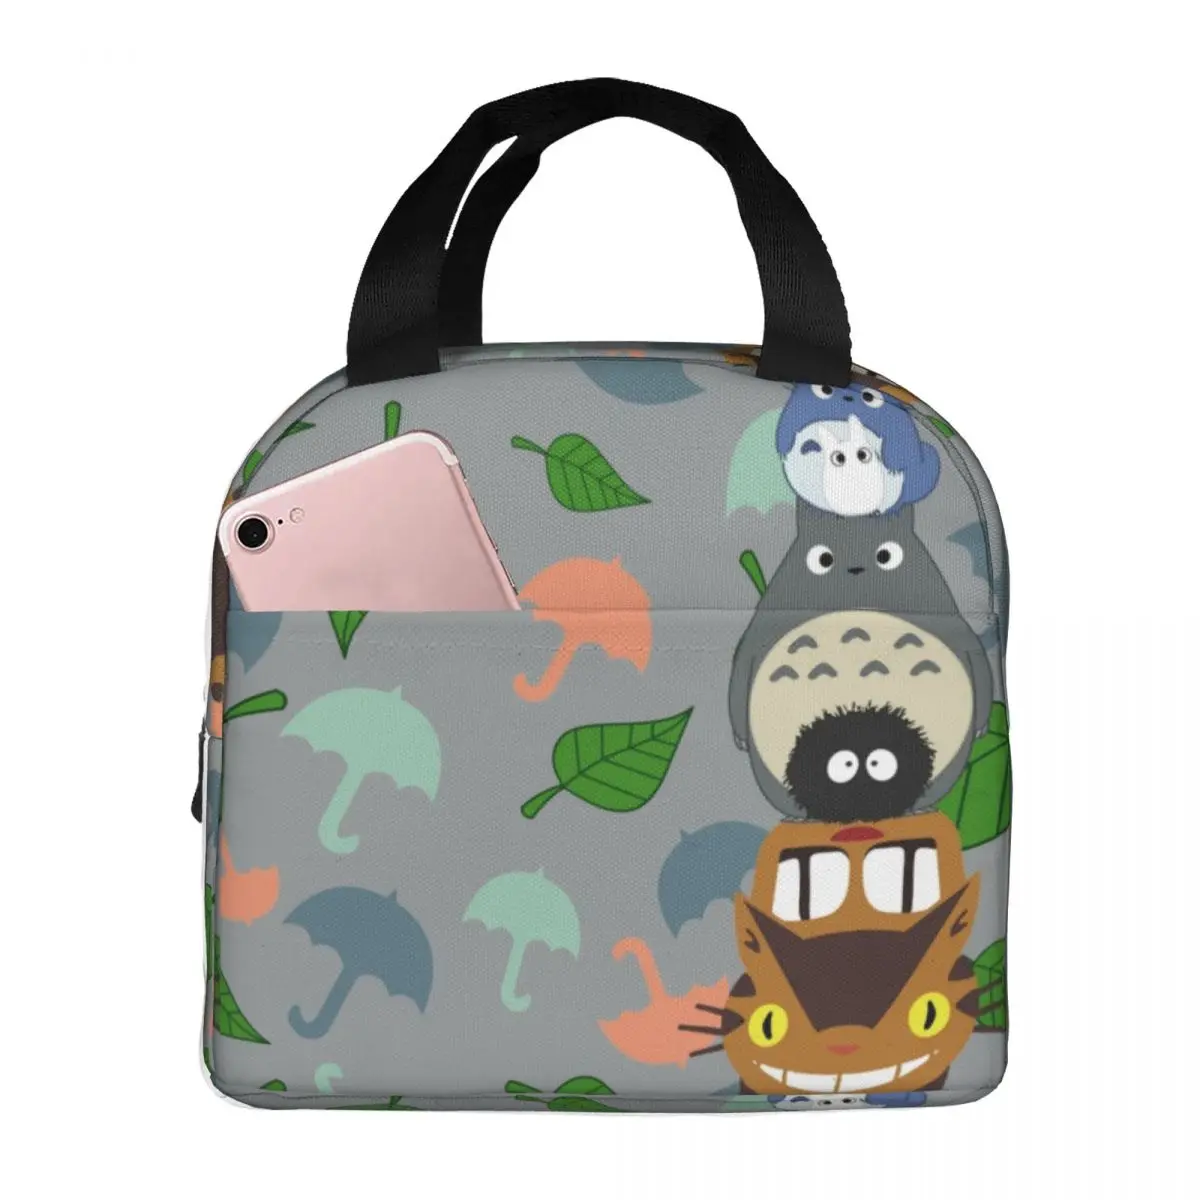 

Totem Totoro Lunch Bag with Handle Umbrella Leaves Print Cool Cooler Bag Carry Work Aluminium Thermal Bag